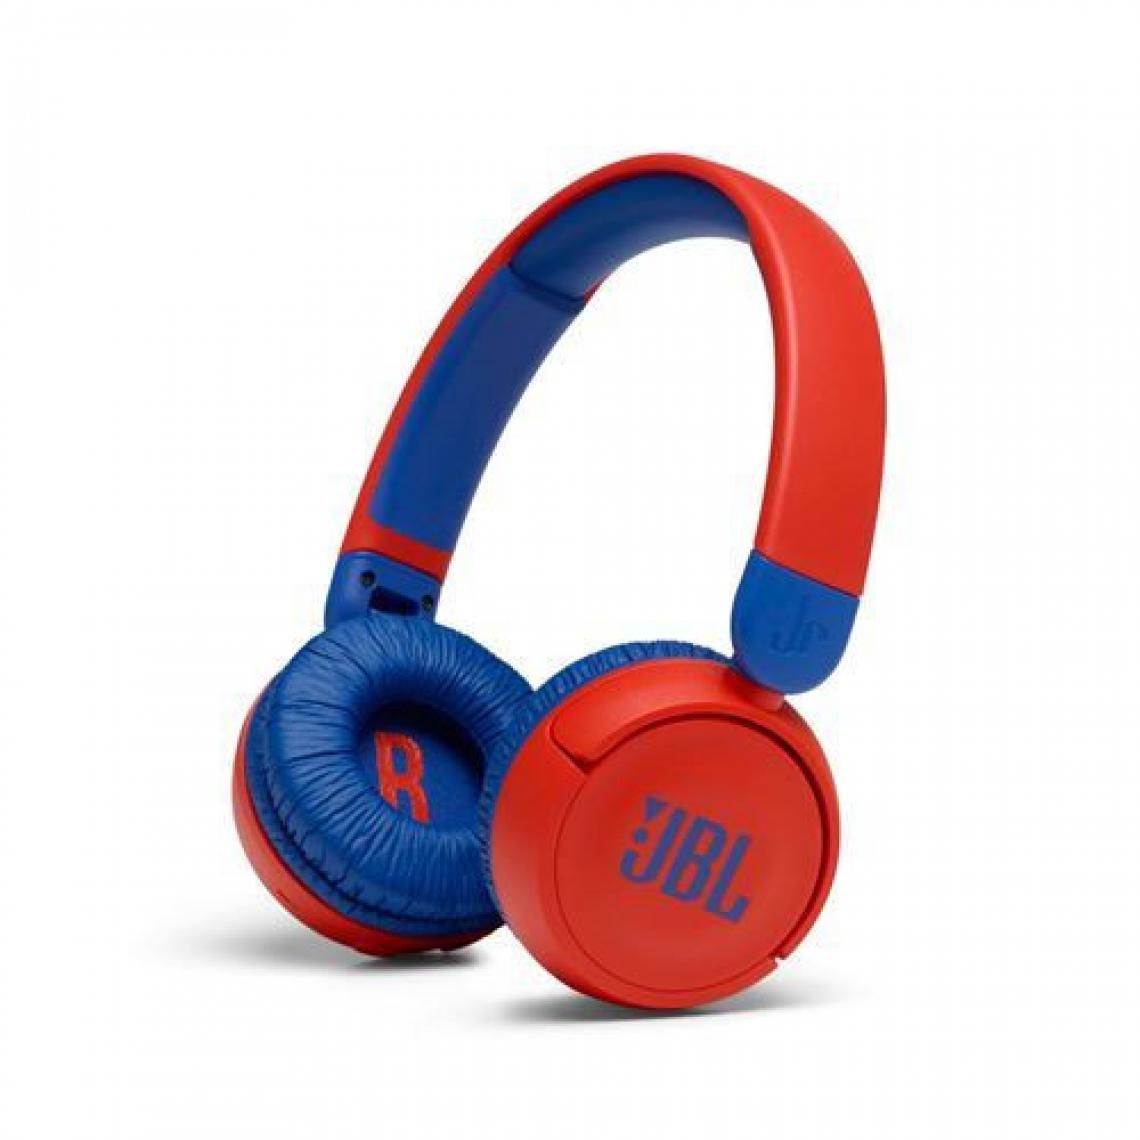 JBL - Casque audio sans fil pour enfants Bluetooh JBL JR310BT Rouge et bleu - Micro-Casque